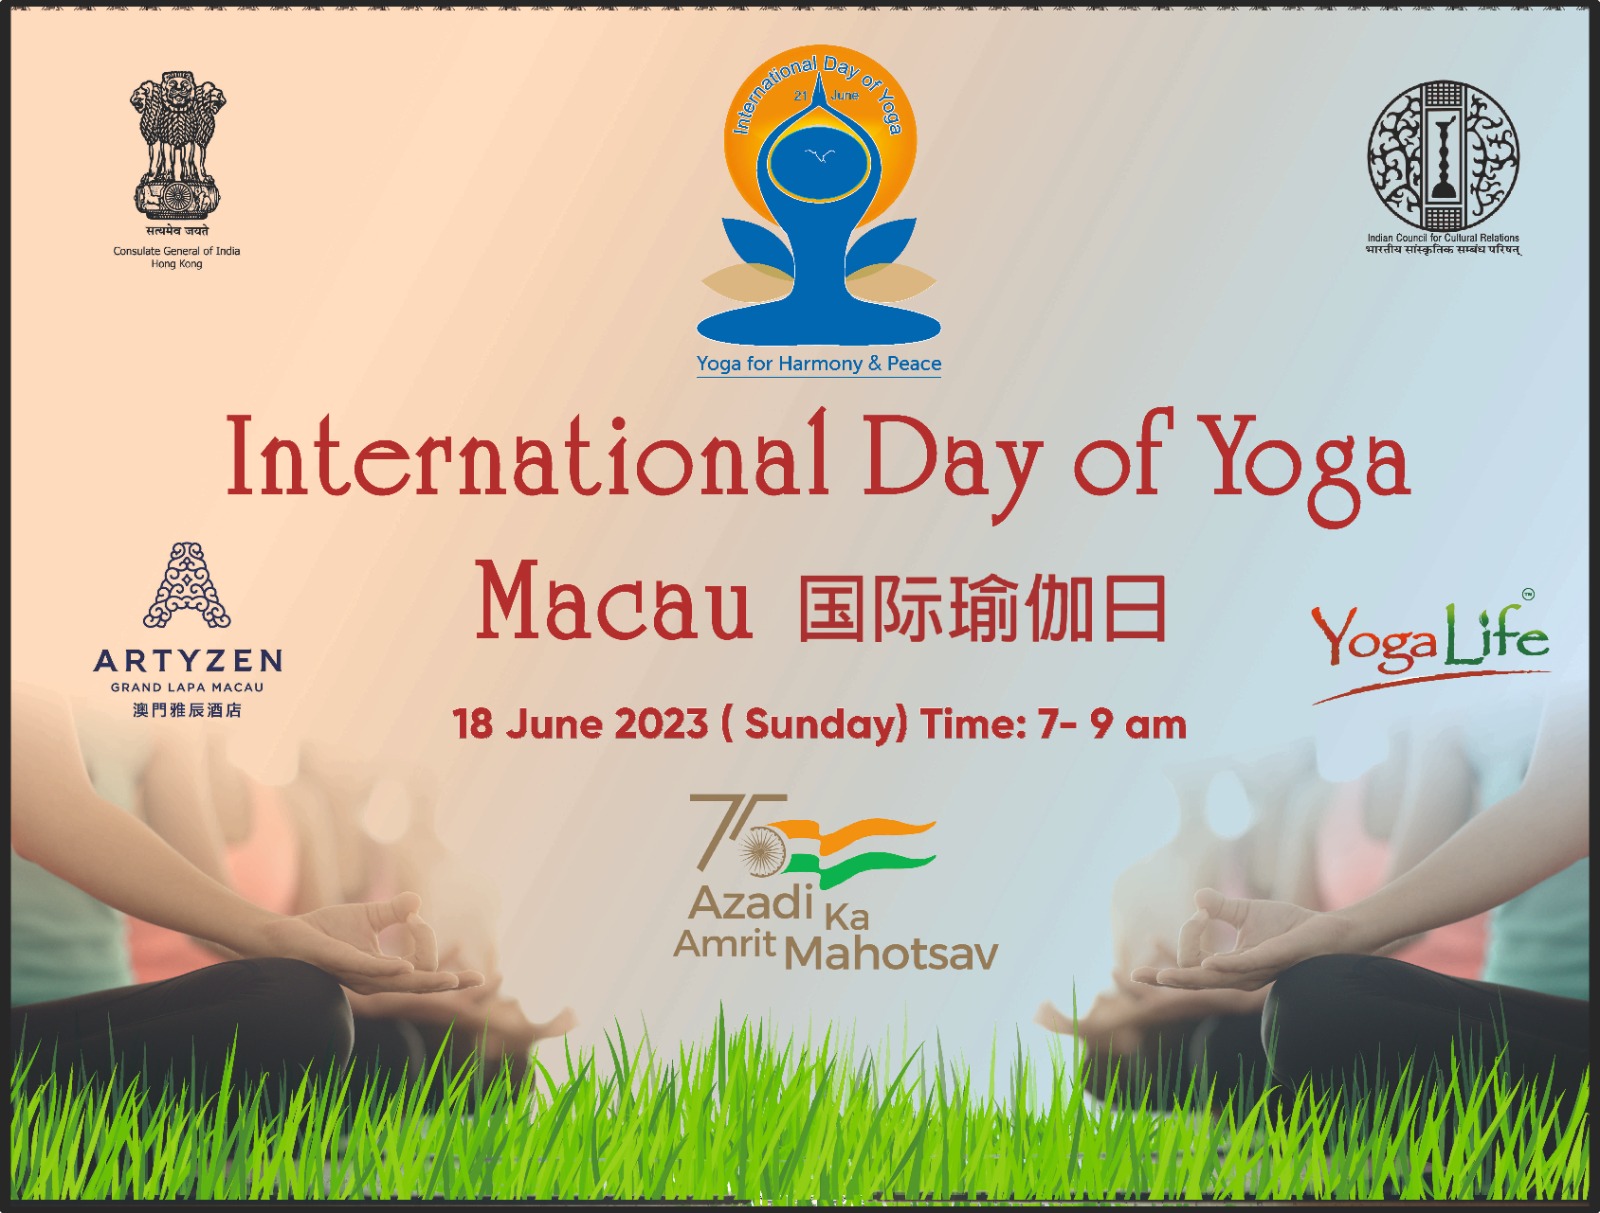 International Day of Yoga 2023 in Macau